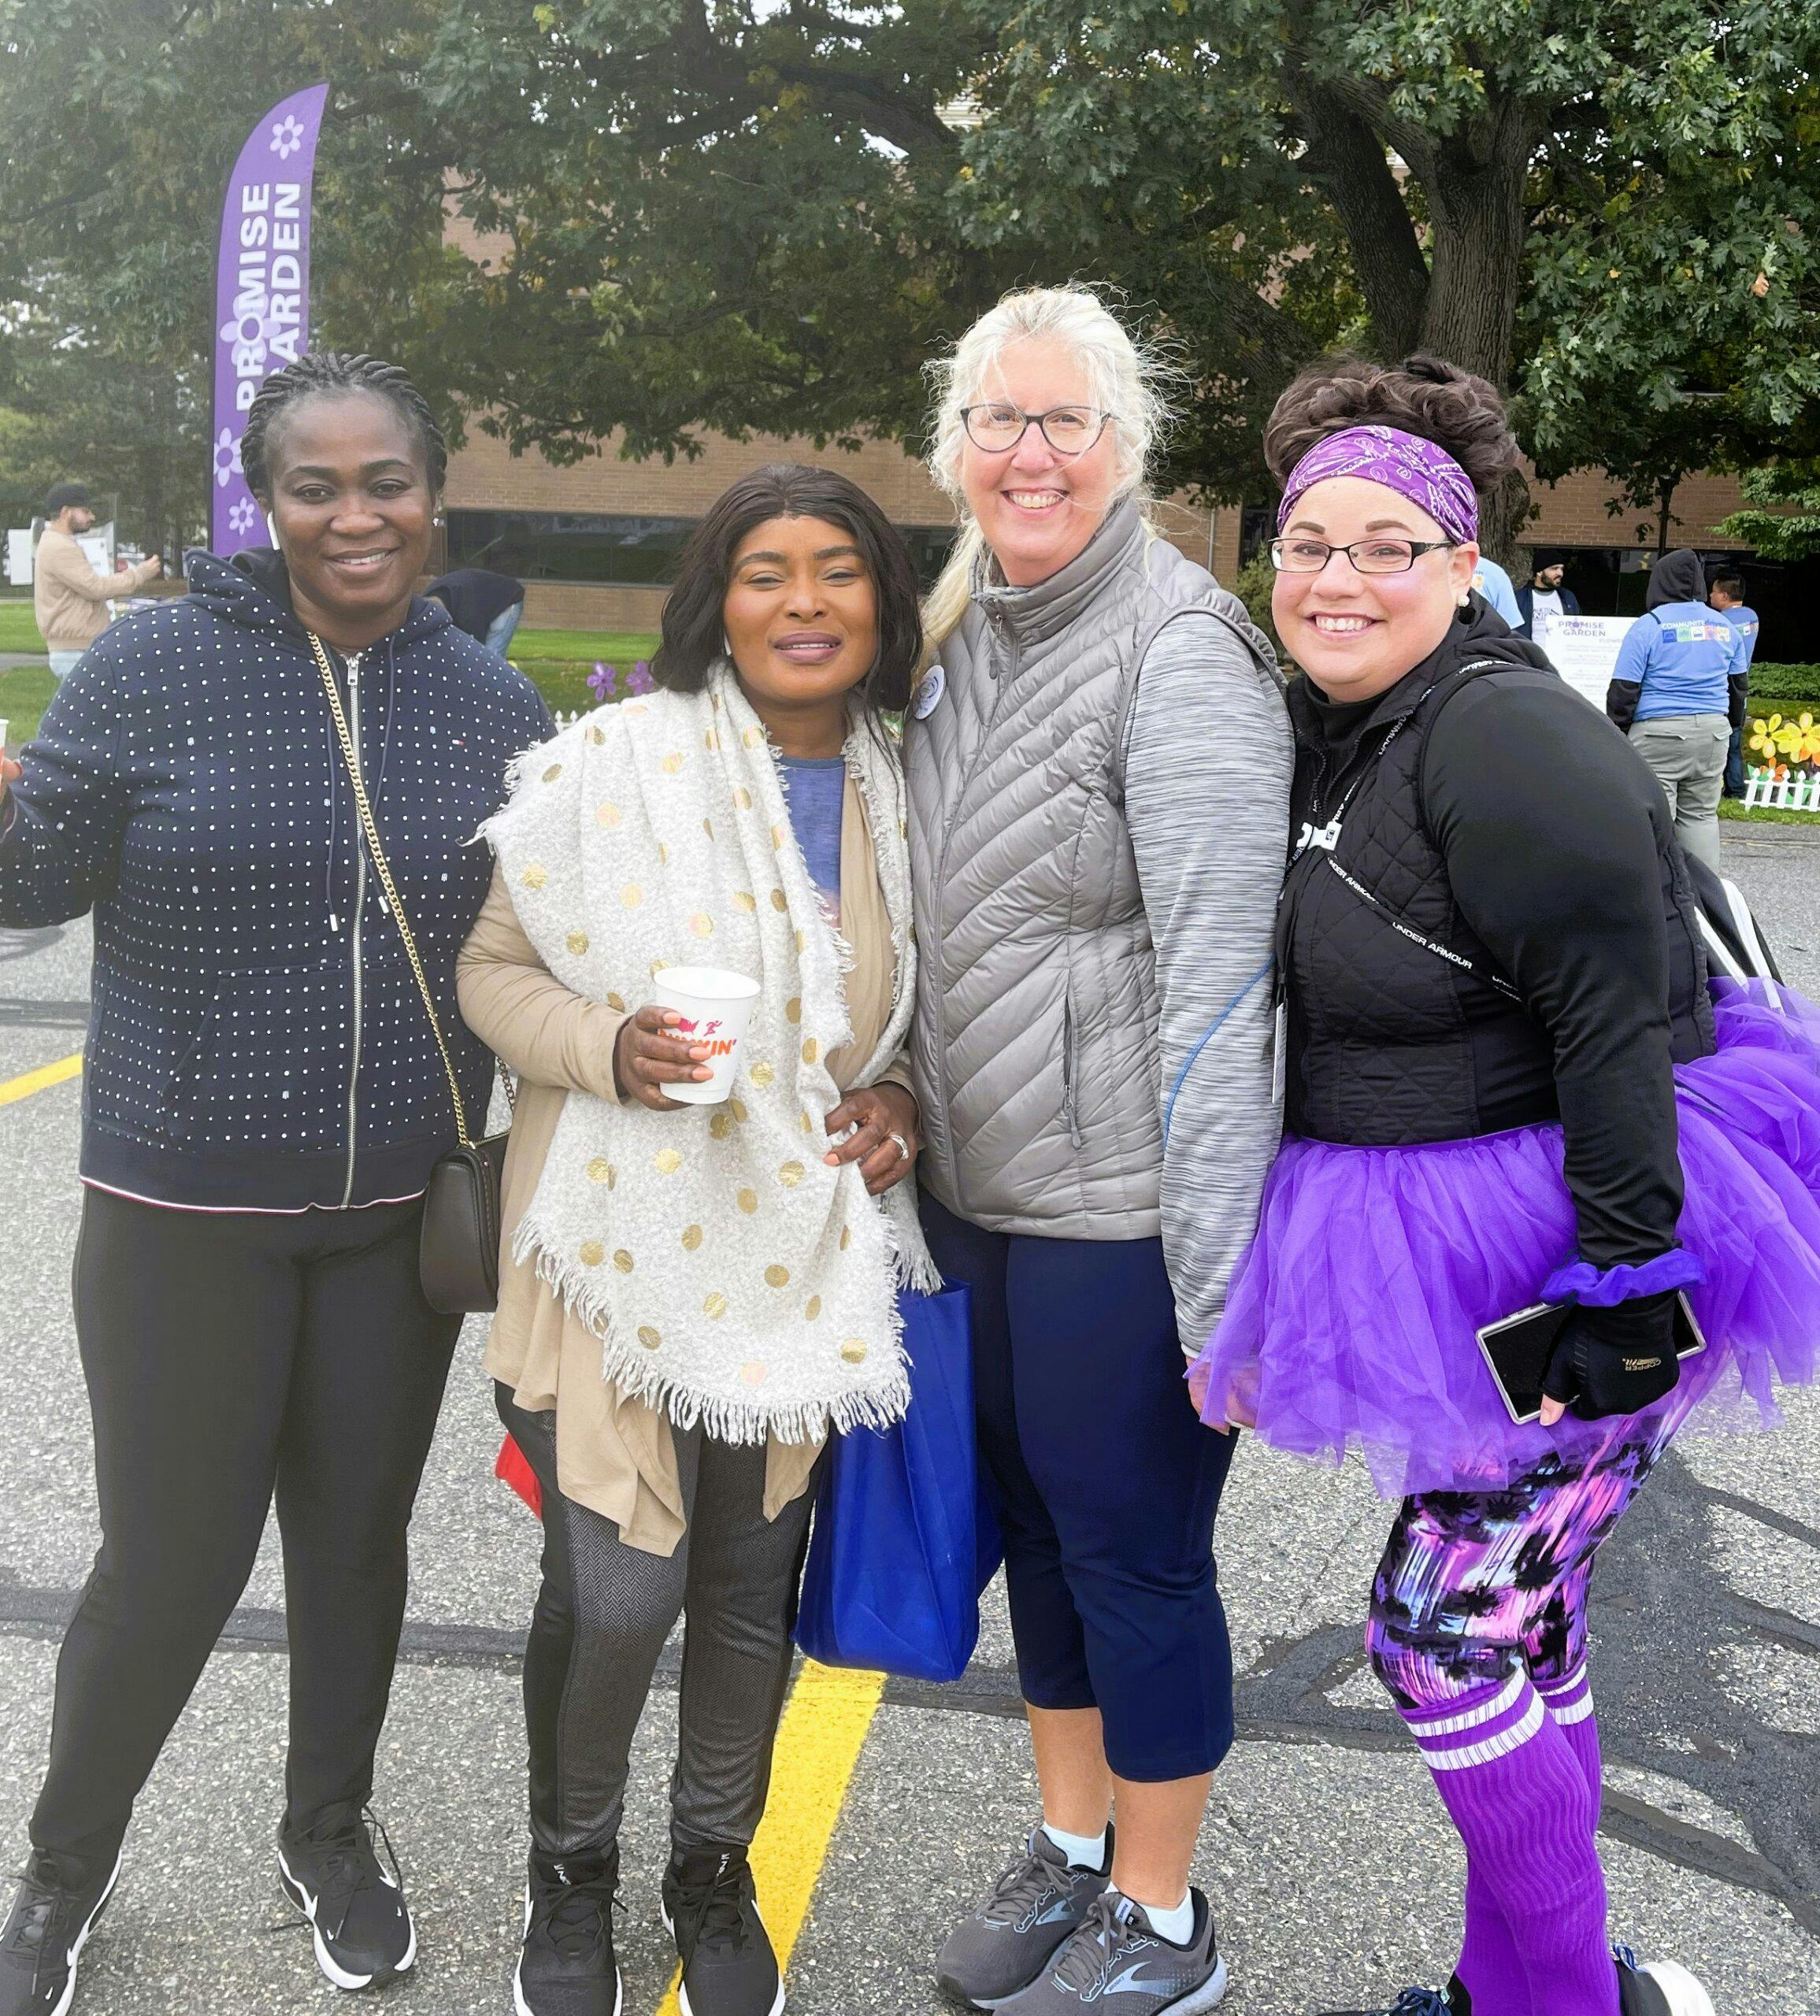 Four women posing for a photo at an Alzheimer's Association event.